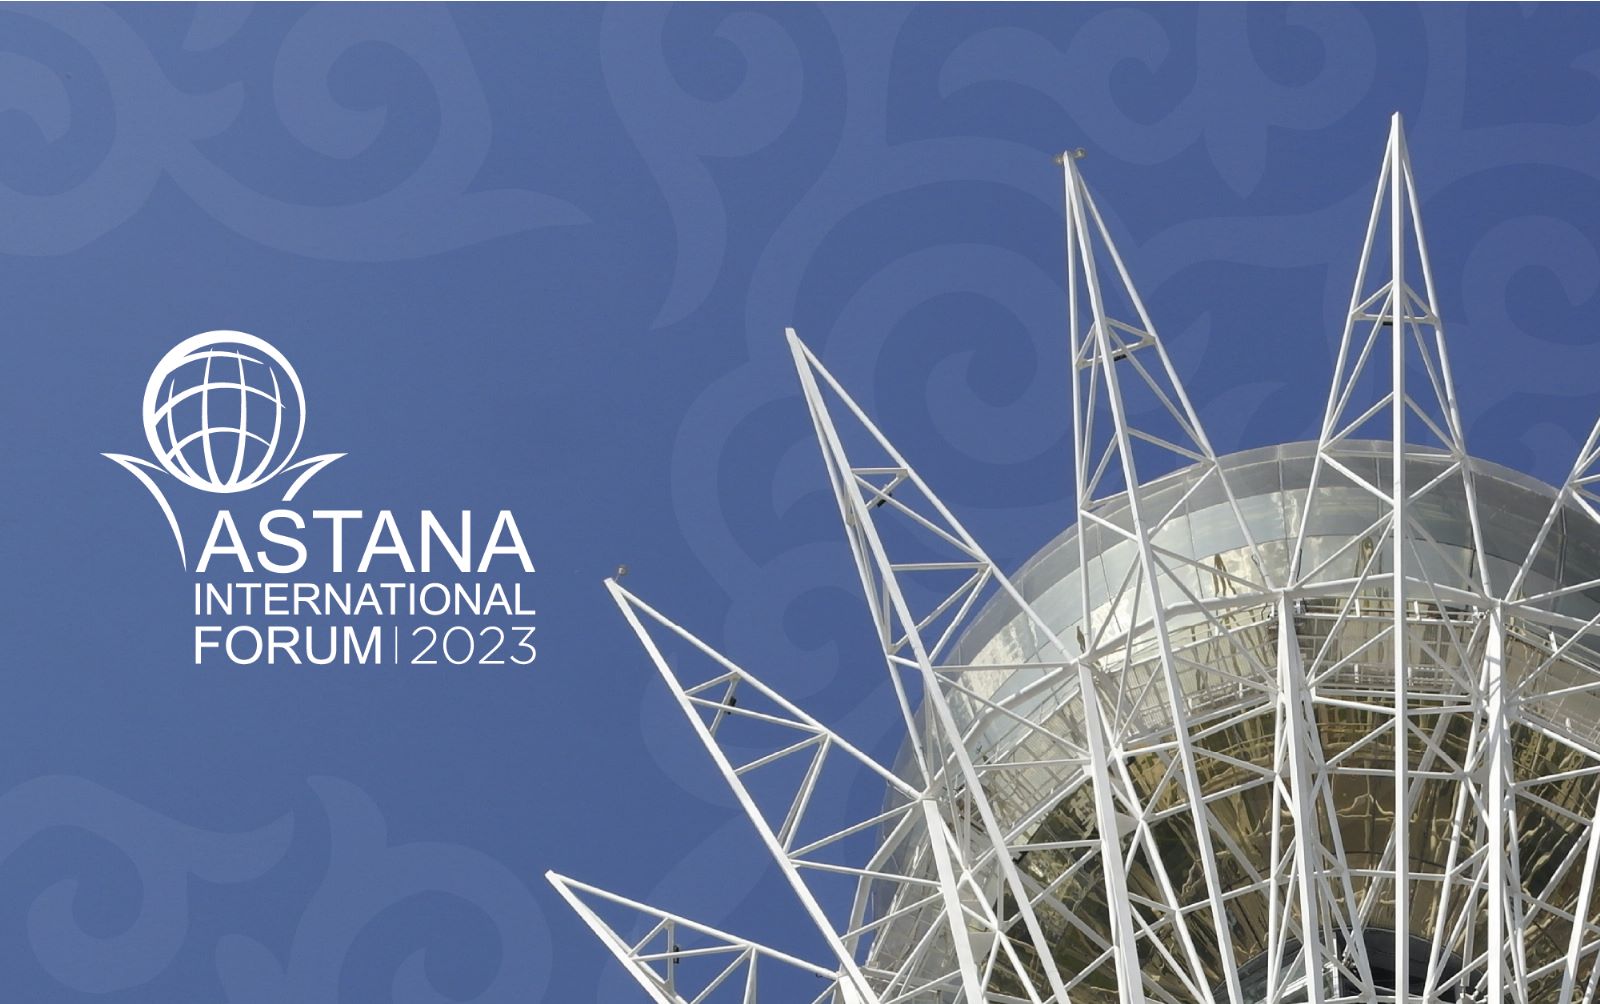 Official poster of Astana International Forum 2023